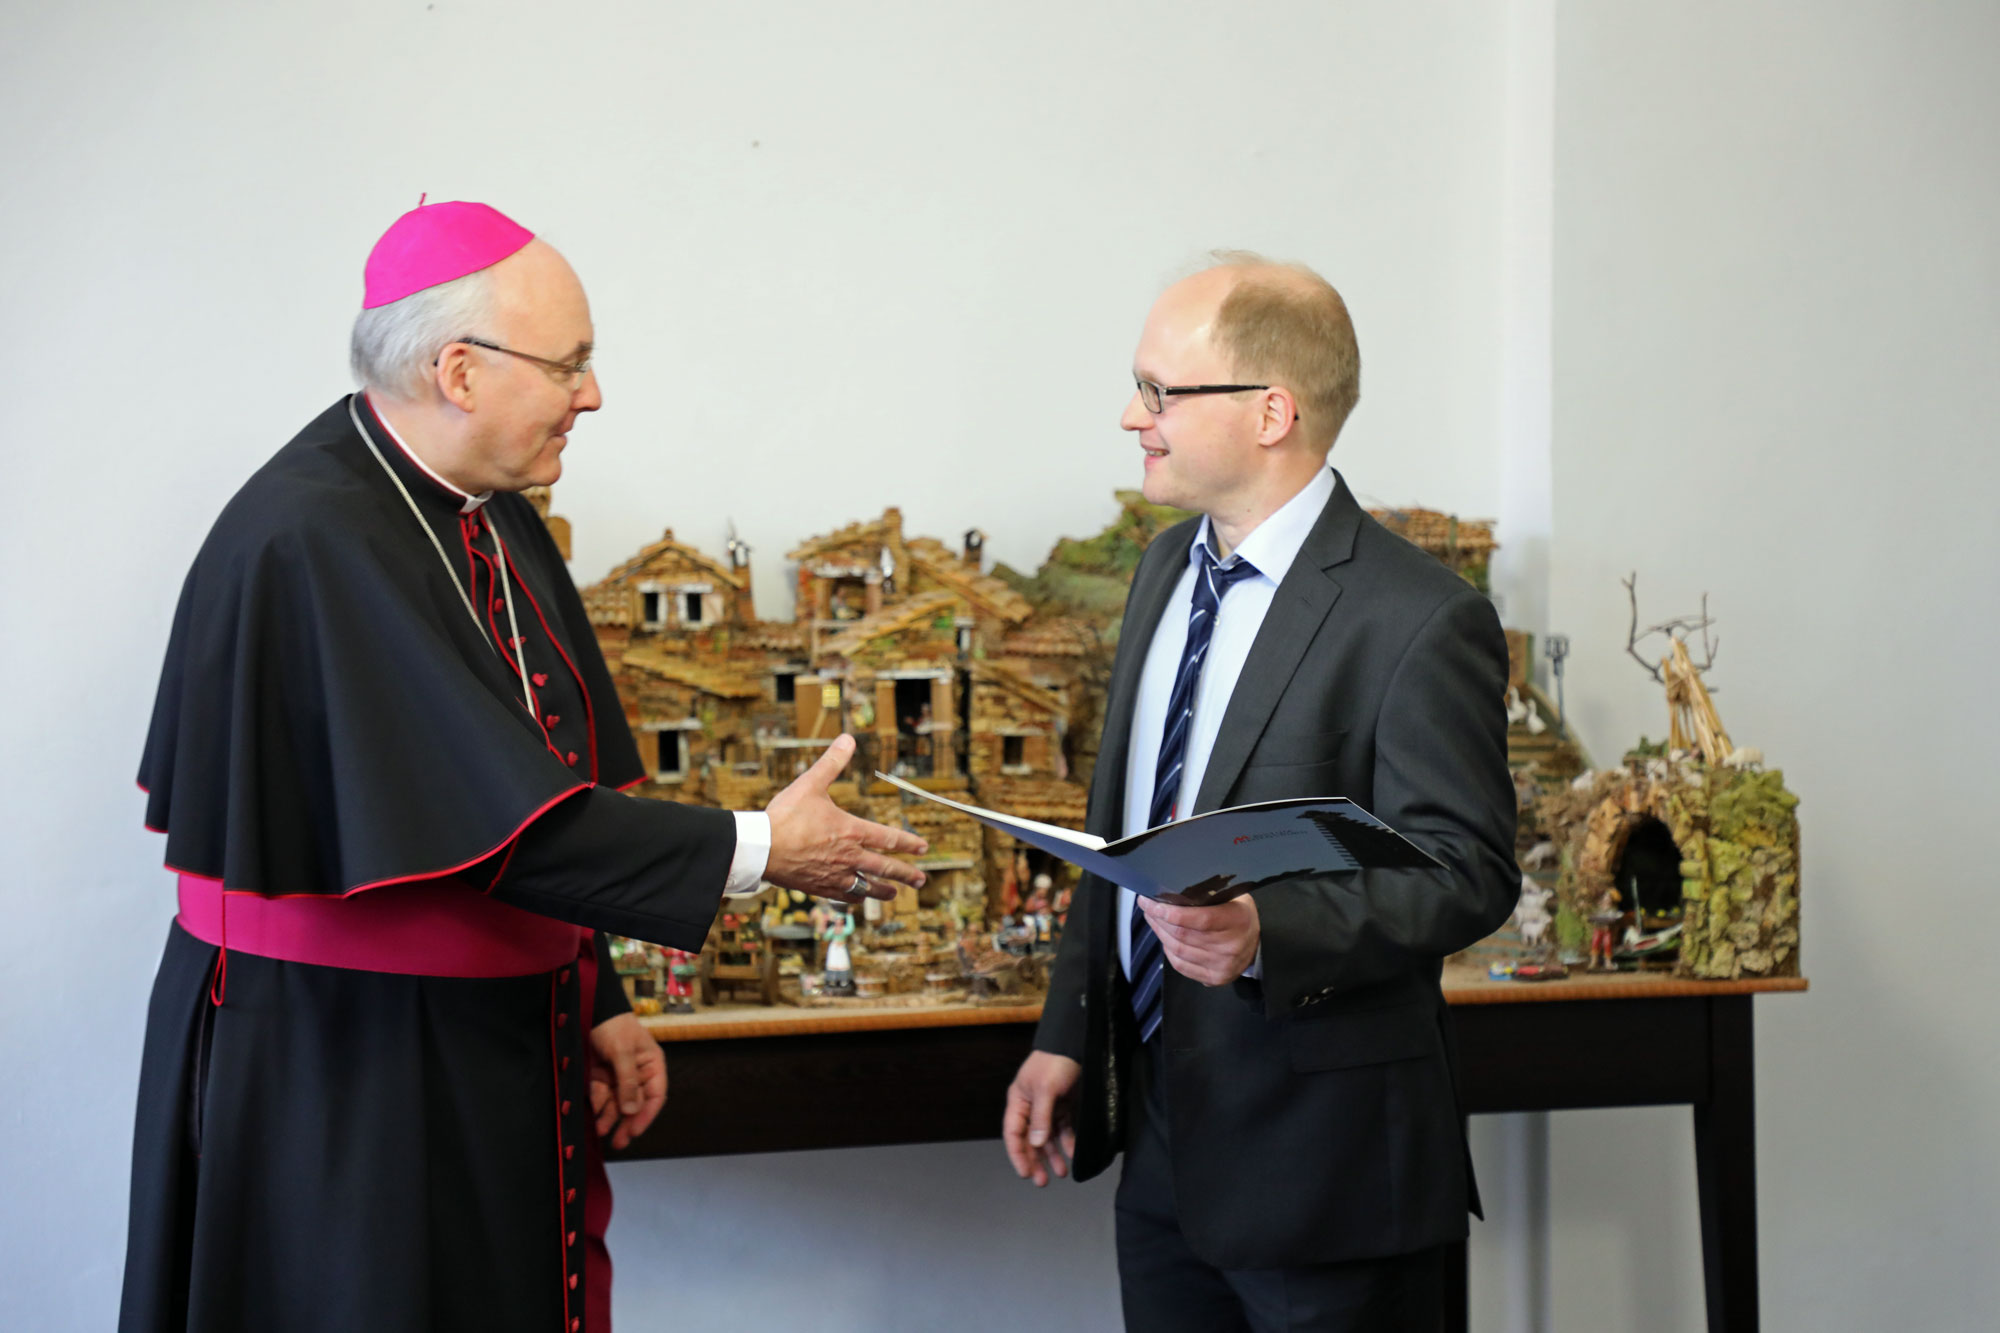 Bischof Rudolf überreicht Prof. Köppl die Ernennungsurkunde